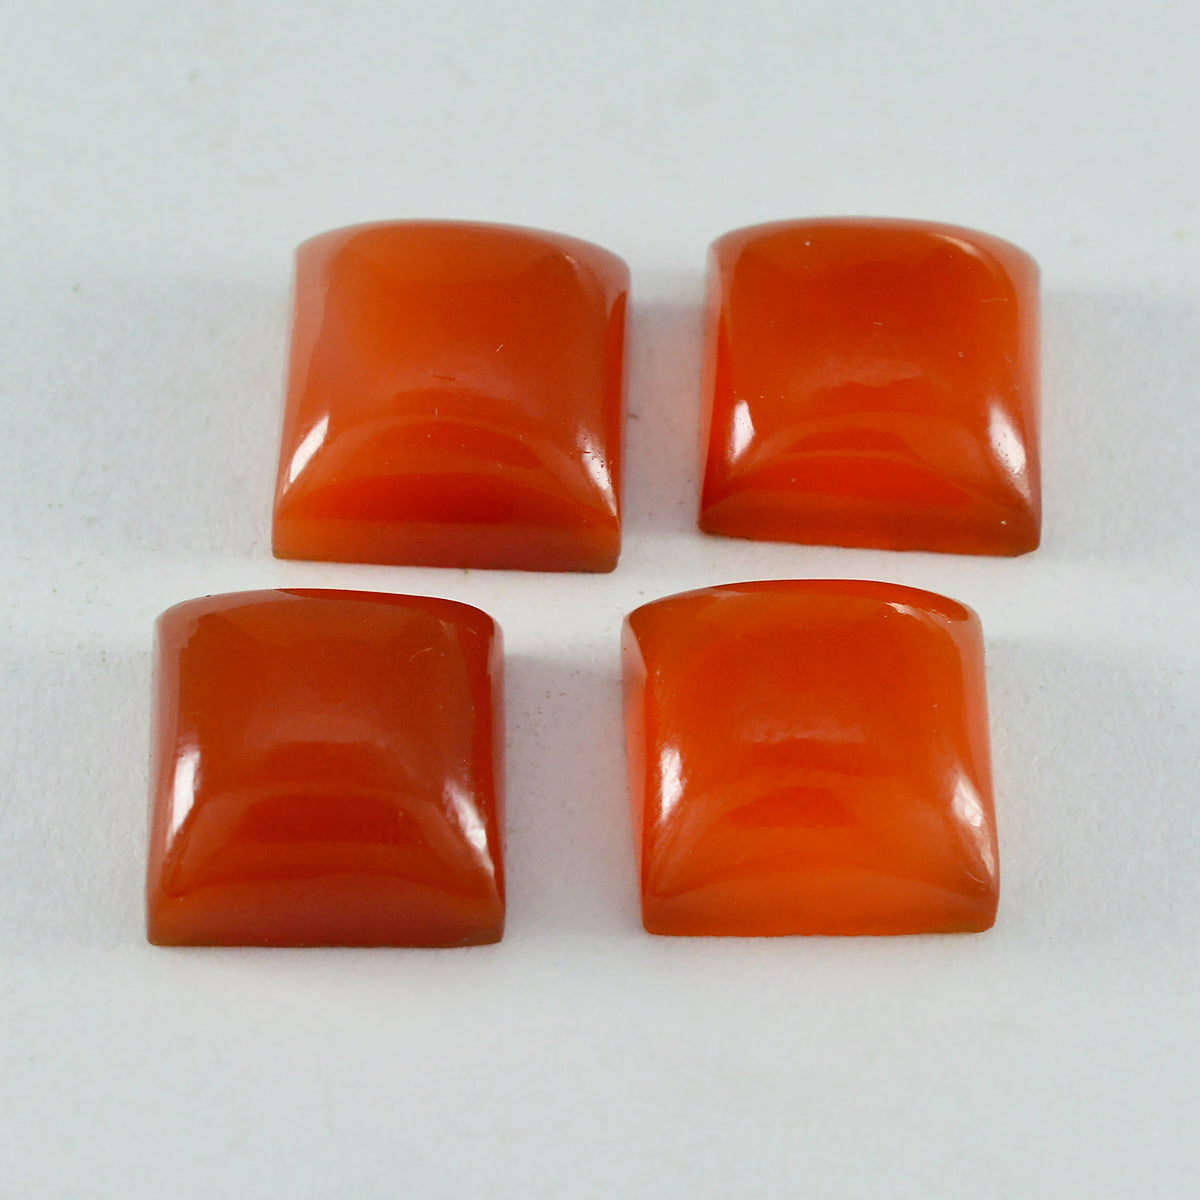 Riyogems 1 Stück roter Onyx-Cabochon, 13 x 13 mm, quadratische Form, hübscher Qualitäts-Edelstein